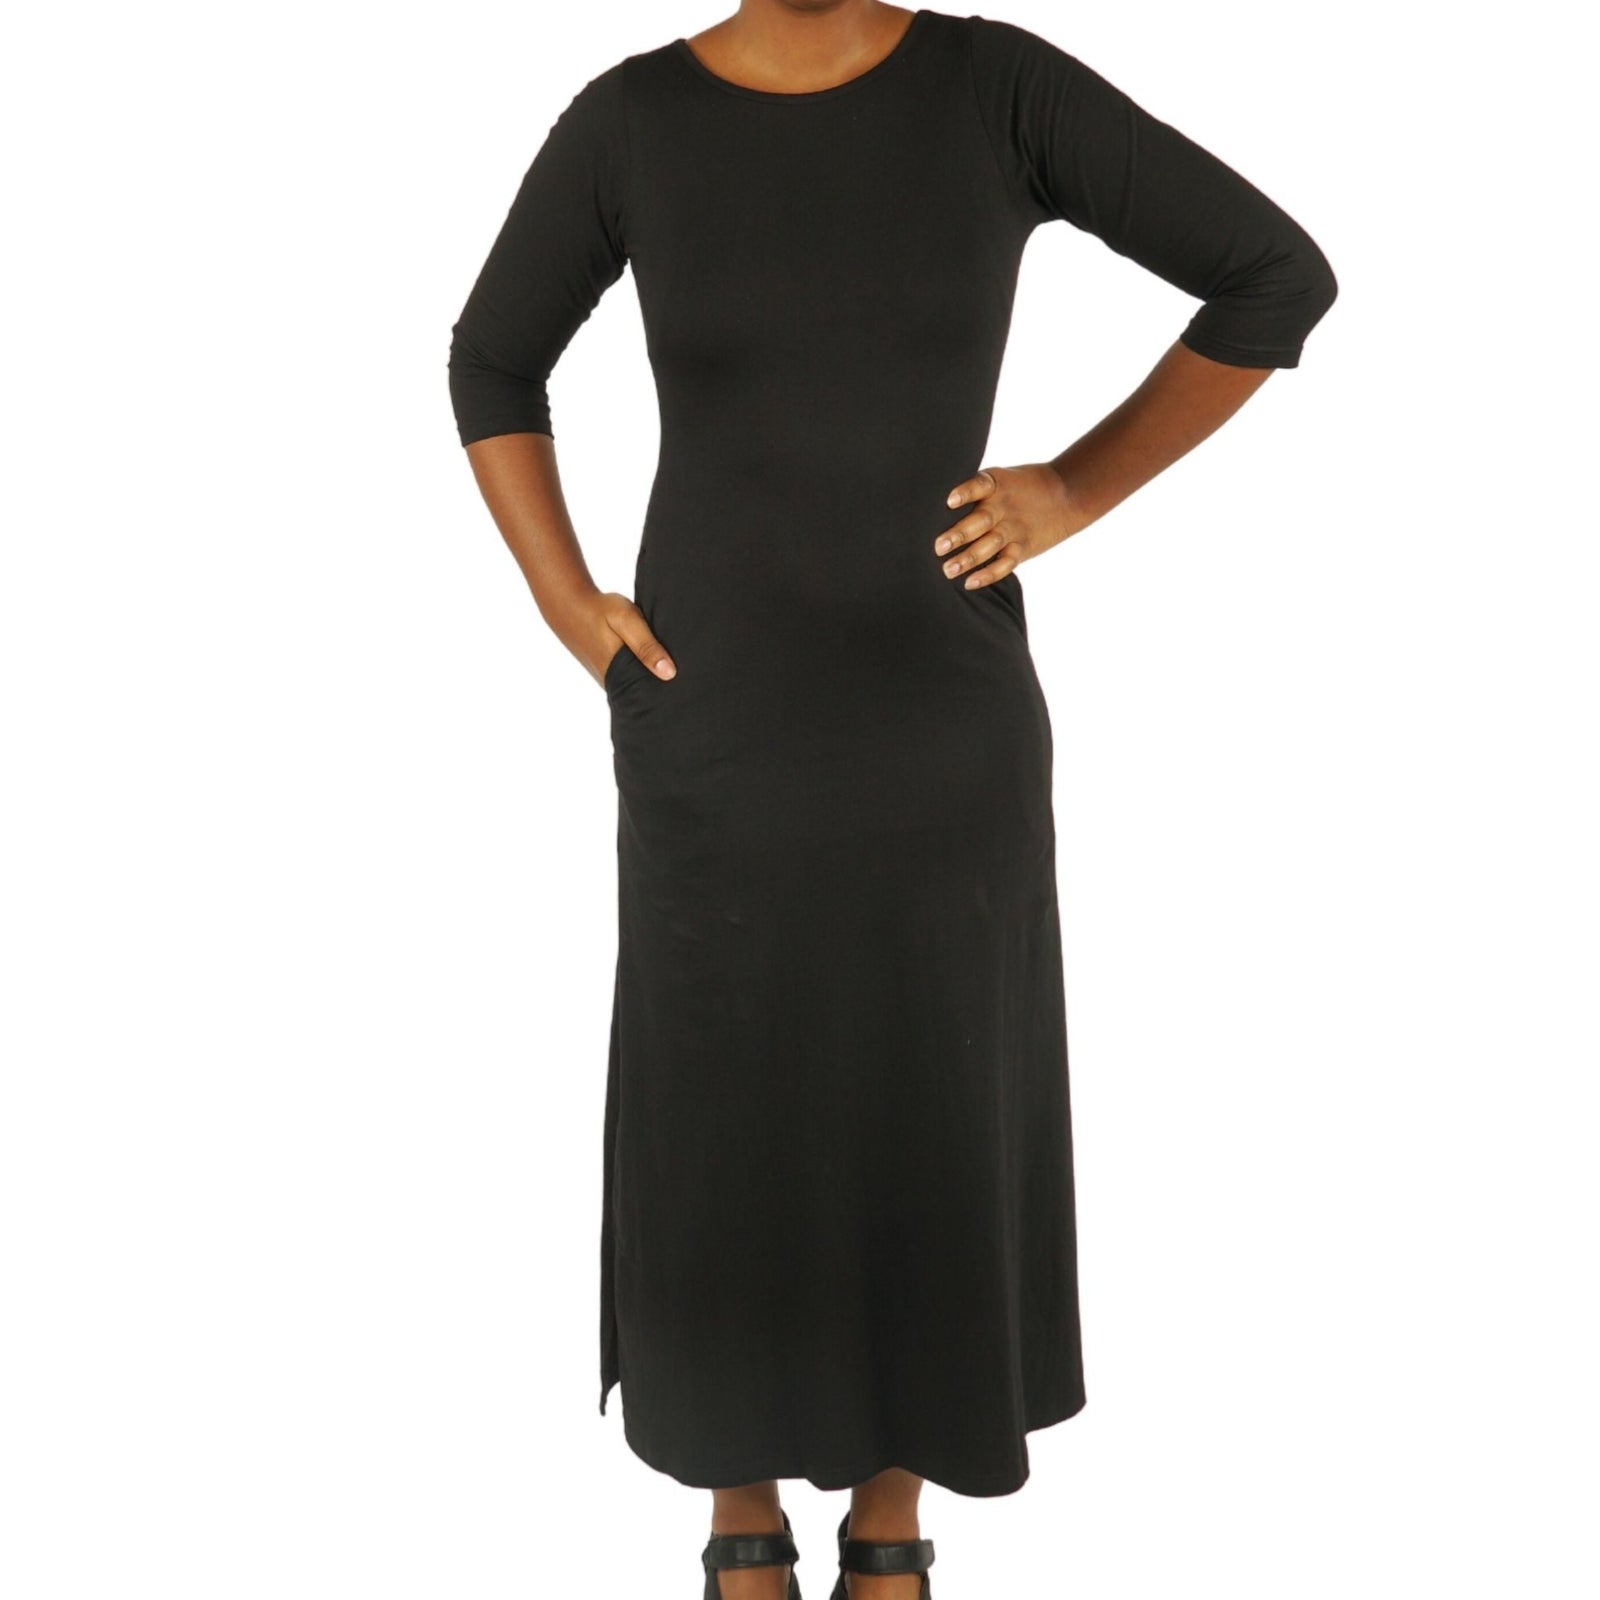 Black Adults Maxi Dress Sample - XS